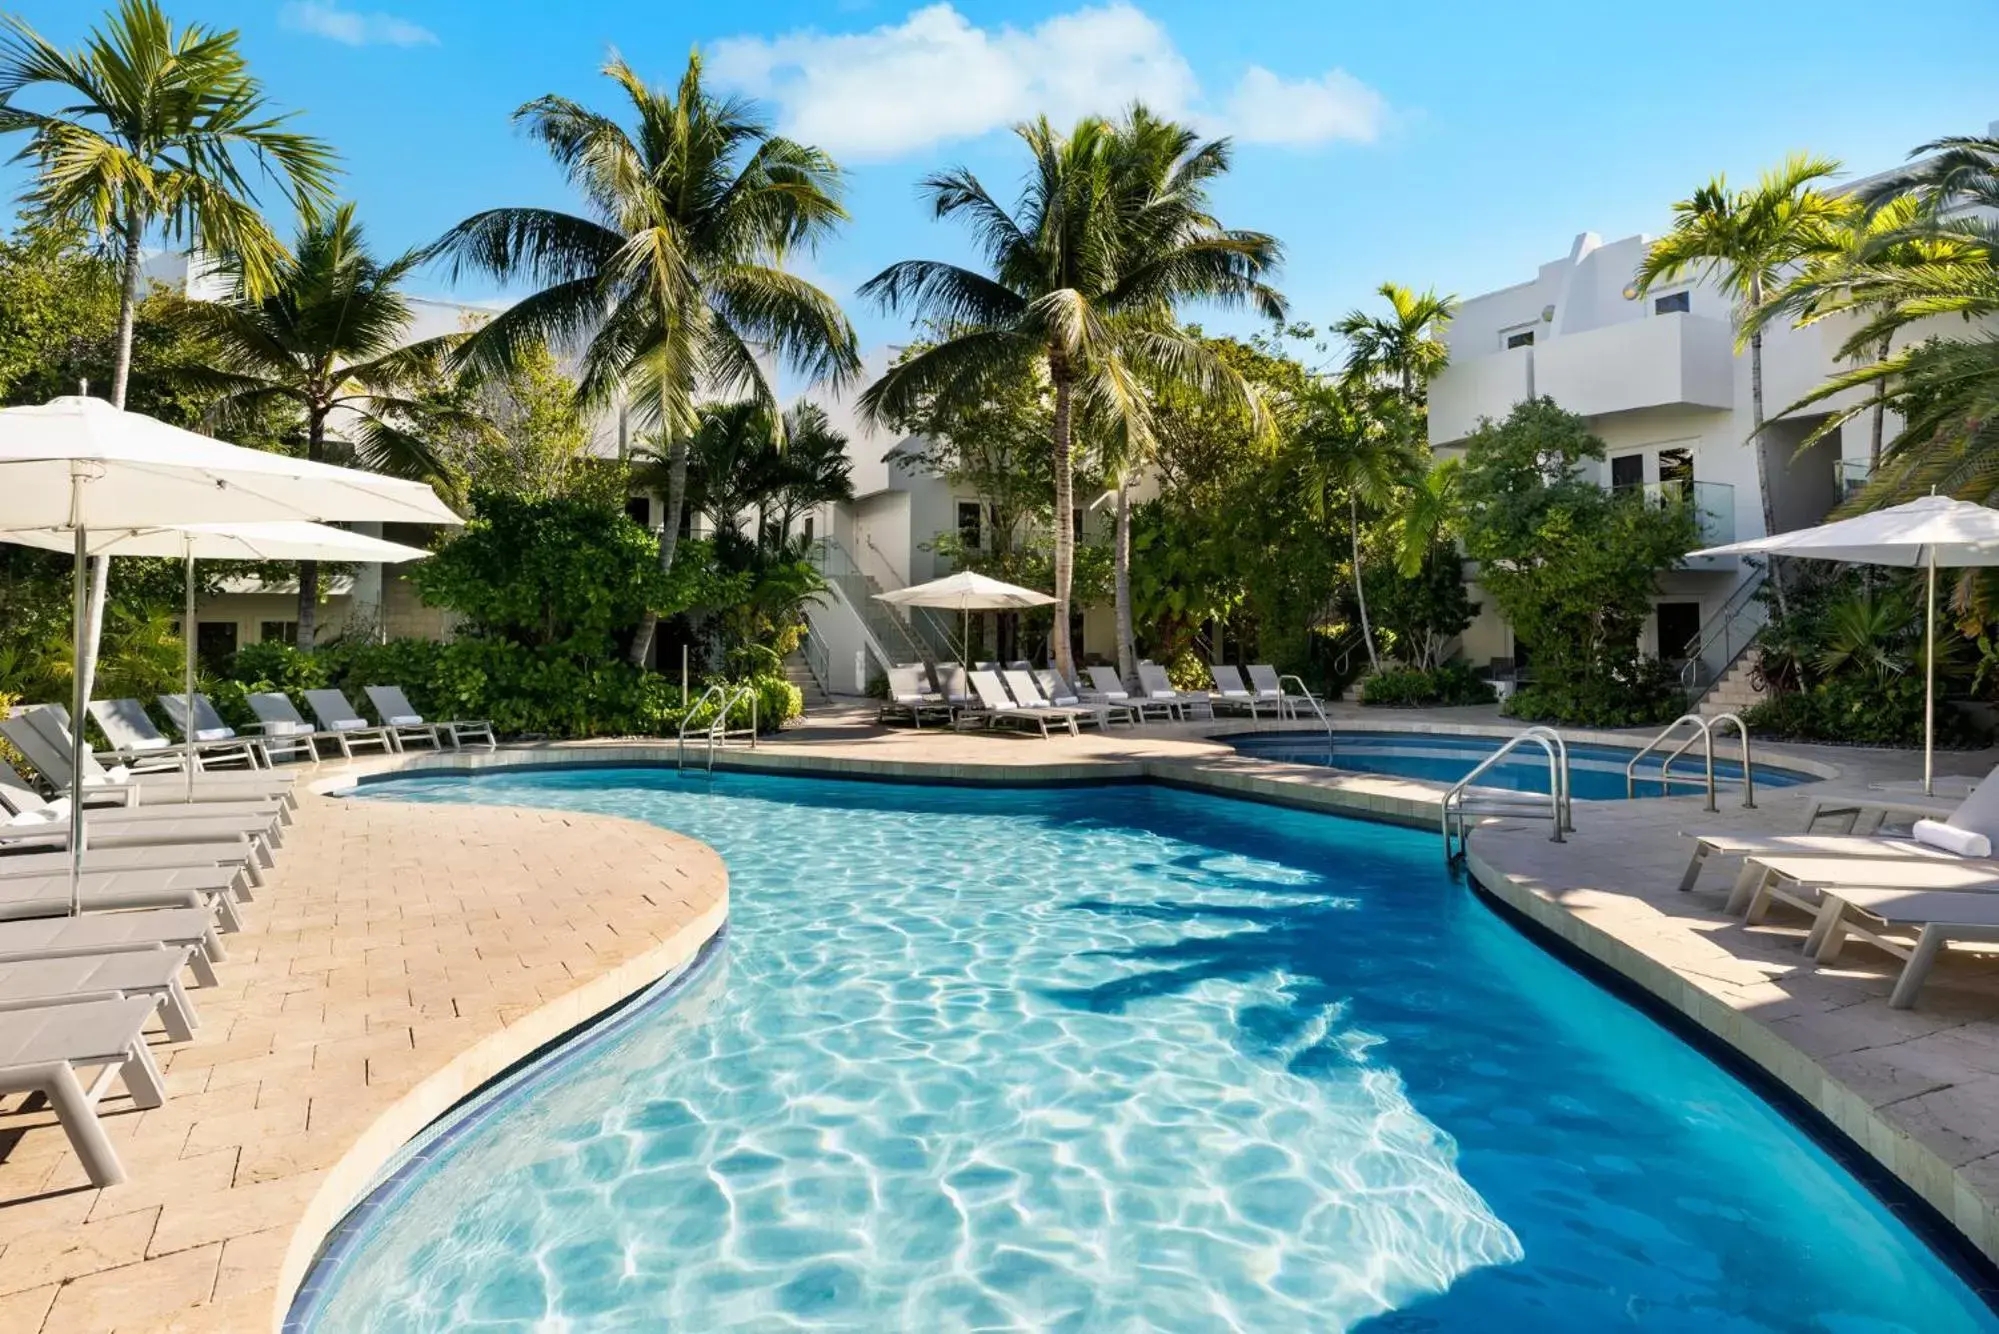 Swimming Pool in Santa Maria Suites Resort